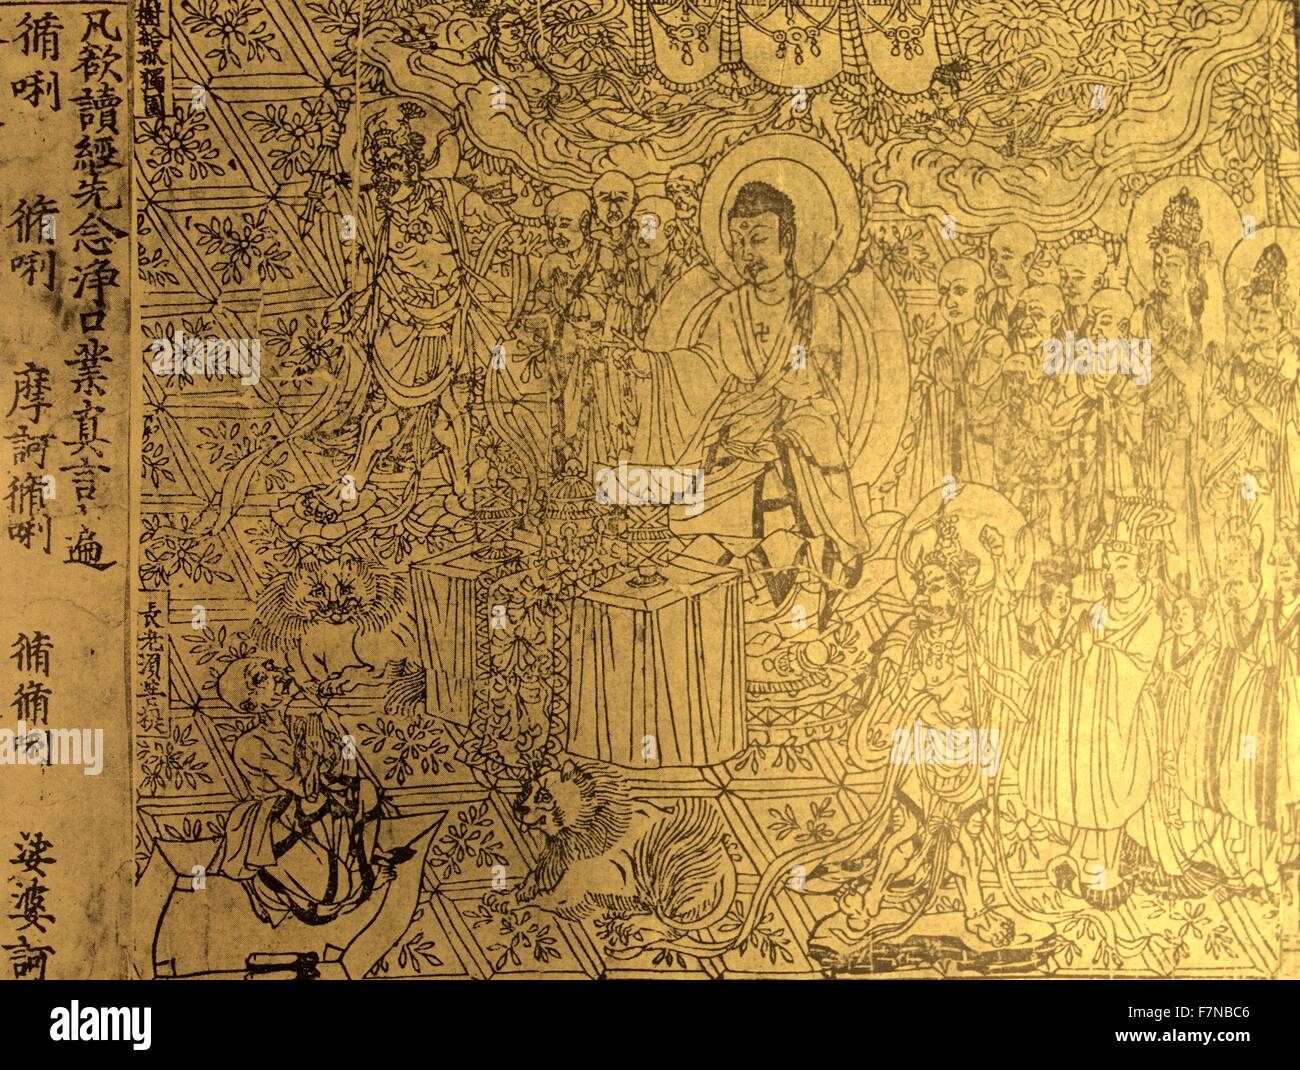 Le Sūtra du diamant. Un sūtra bouddhique Mahāyāna, trouvé parmi les  manuscrits de Dunhuang, en Chine, au début du xxe siècle par Aurel Stein.  Le Sutra date de l'ANNONCE 868 Photo Stock -